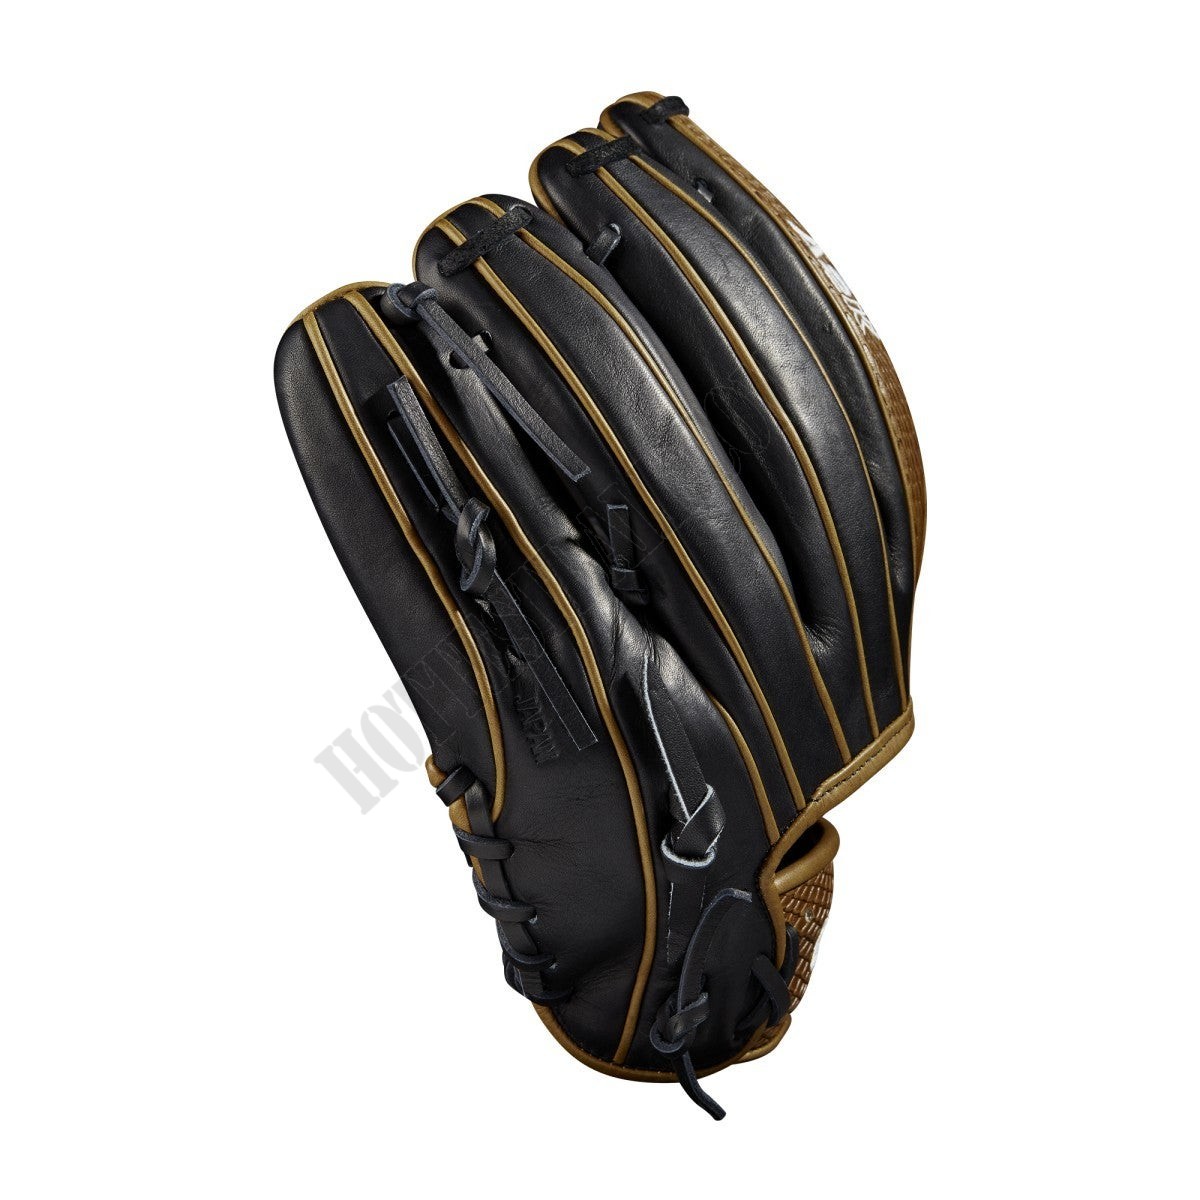 2021 A2K 1786 11.5" Infield Baseball Glove ● Wilson Promotions - -4